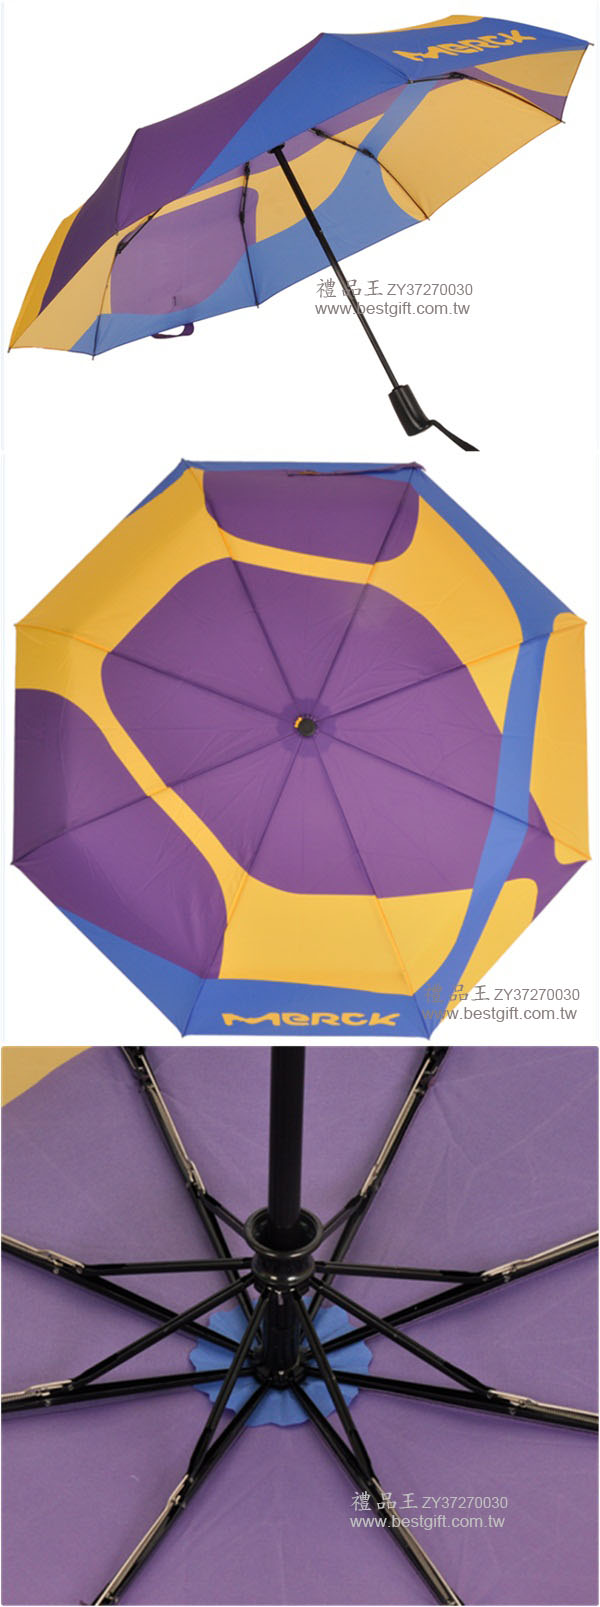 安全自動開收折疊傘     商品貨號: ZY37270030